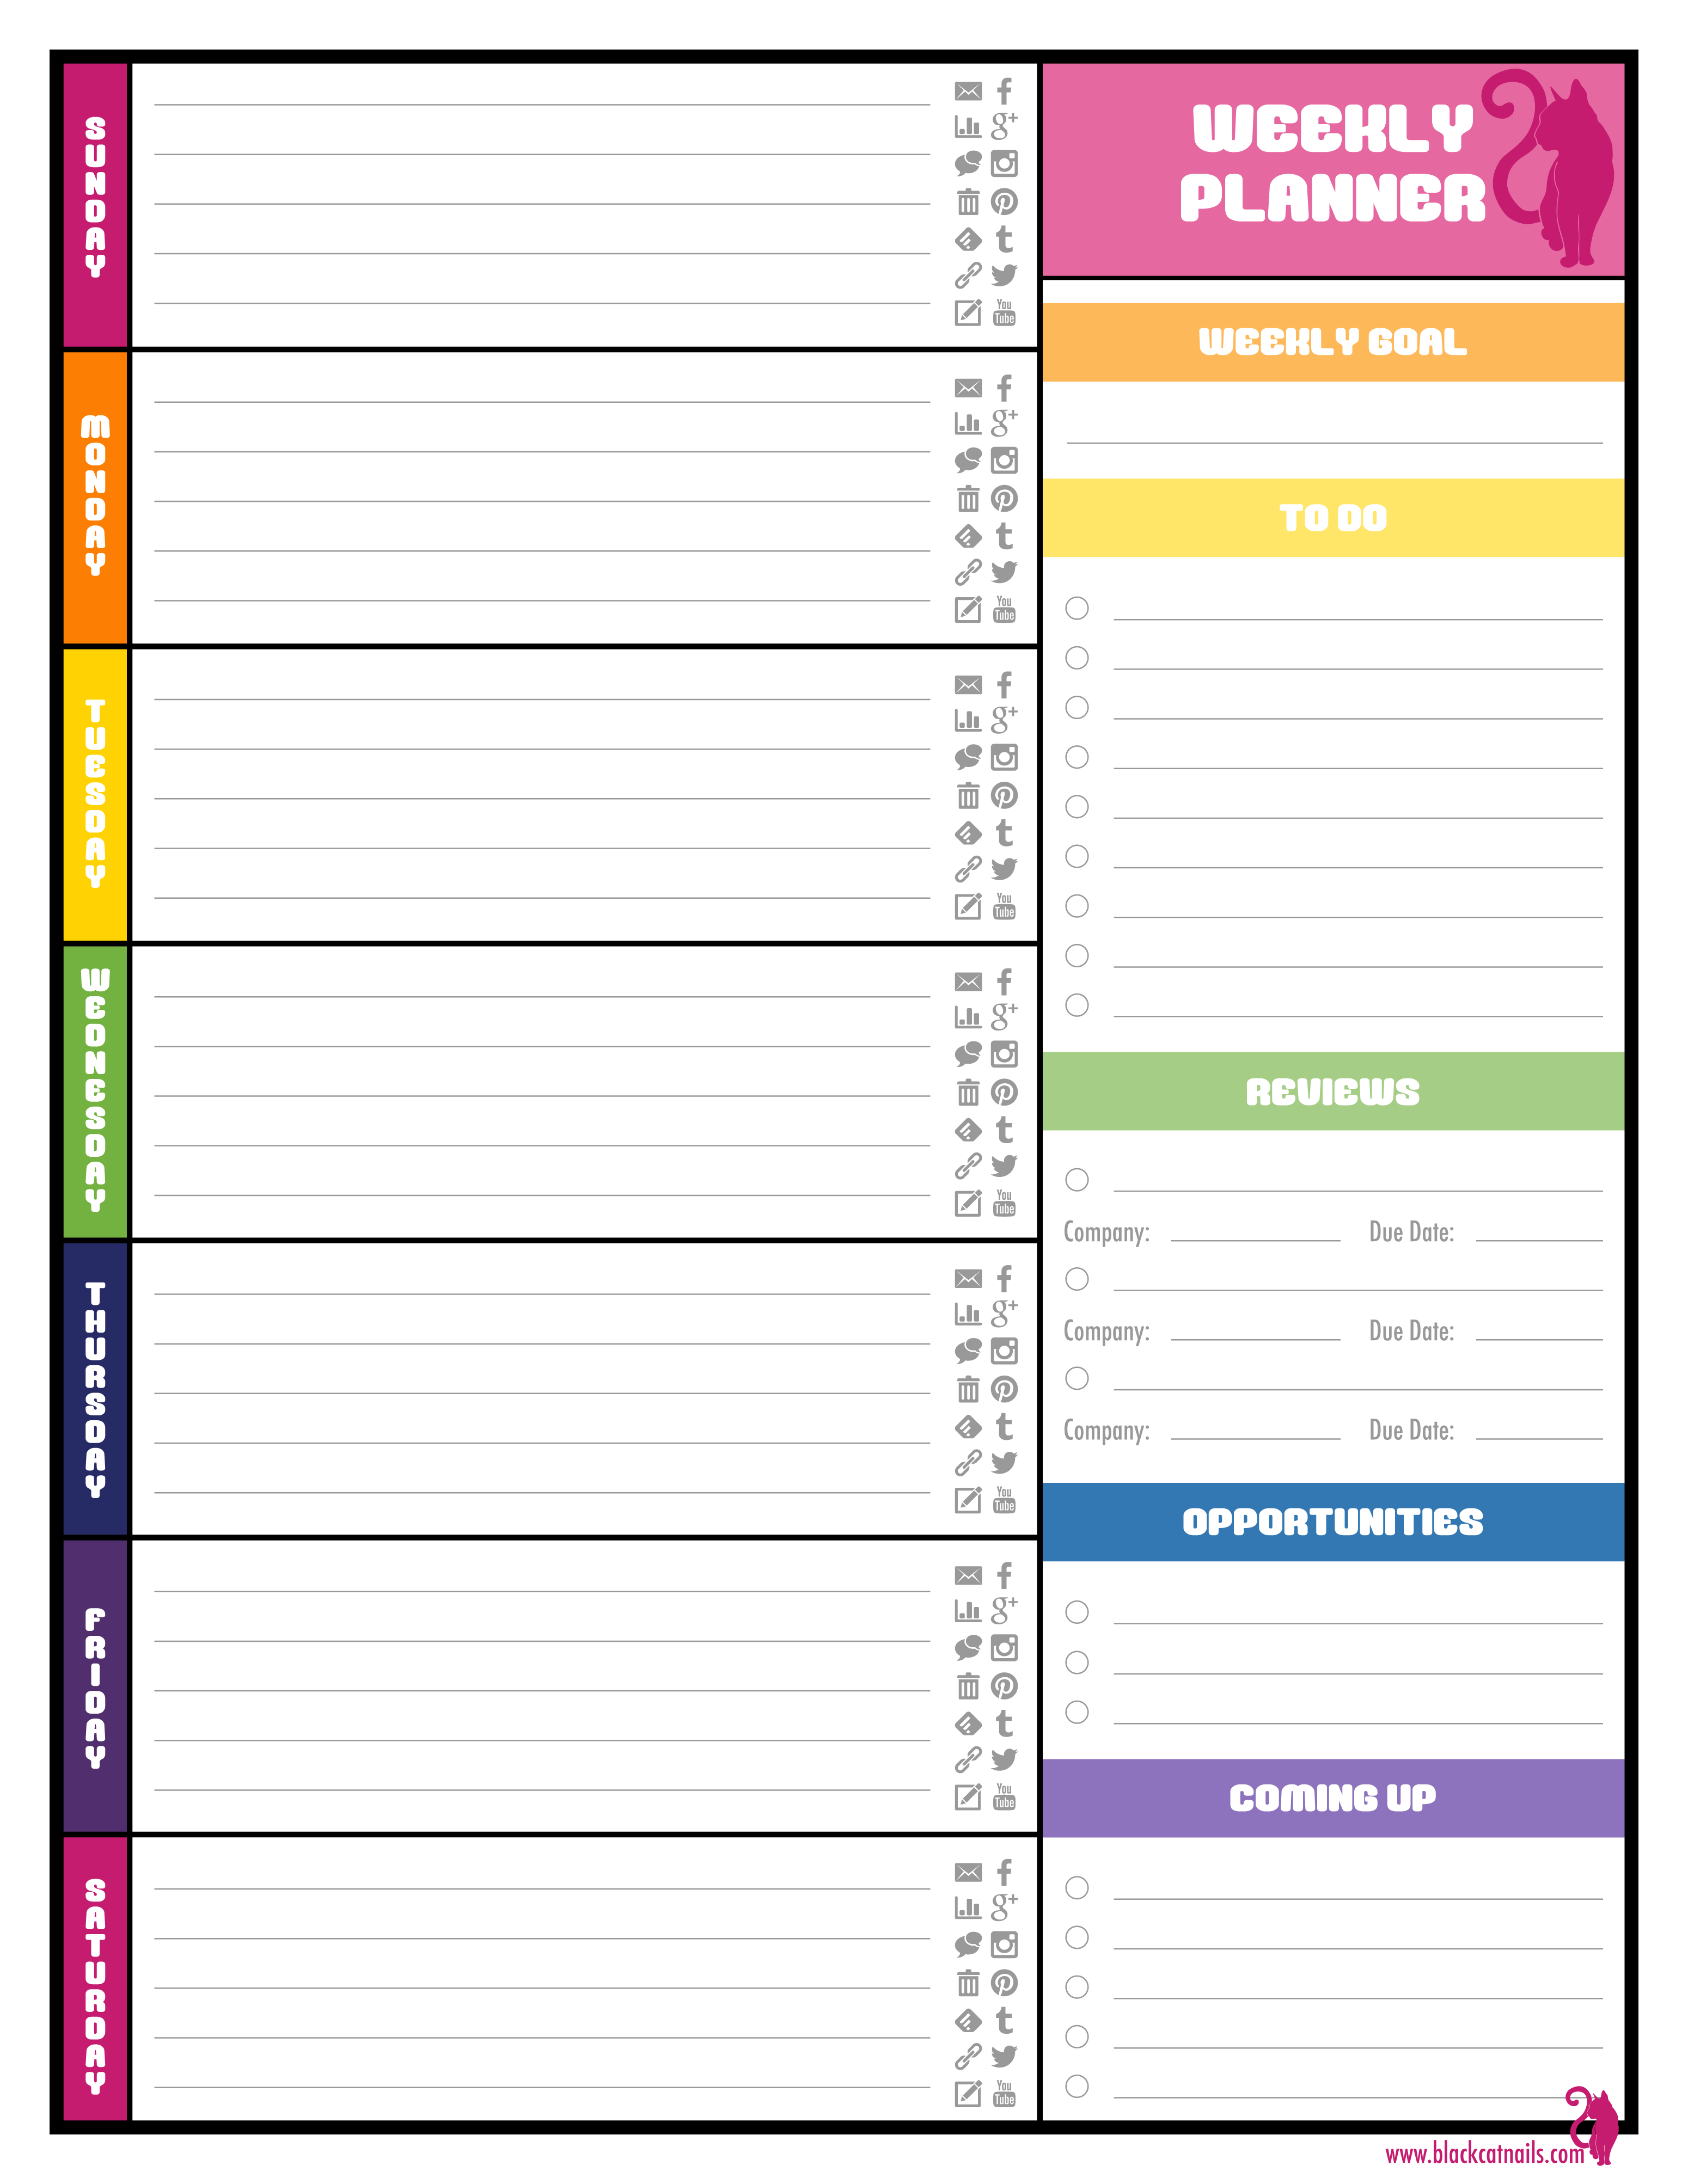 6 Best Images of Weekly Planner Printable 2016 Calendars - Excel ...